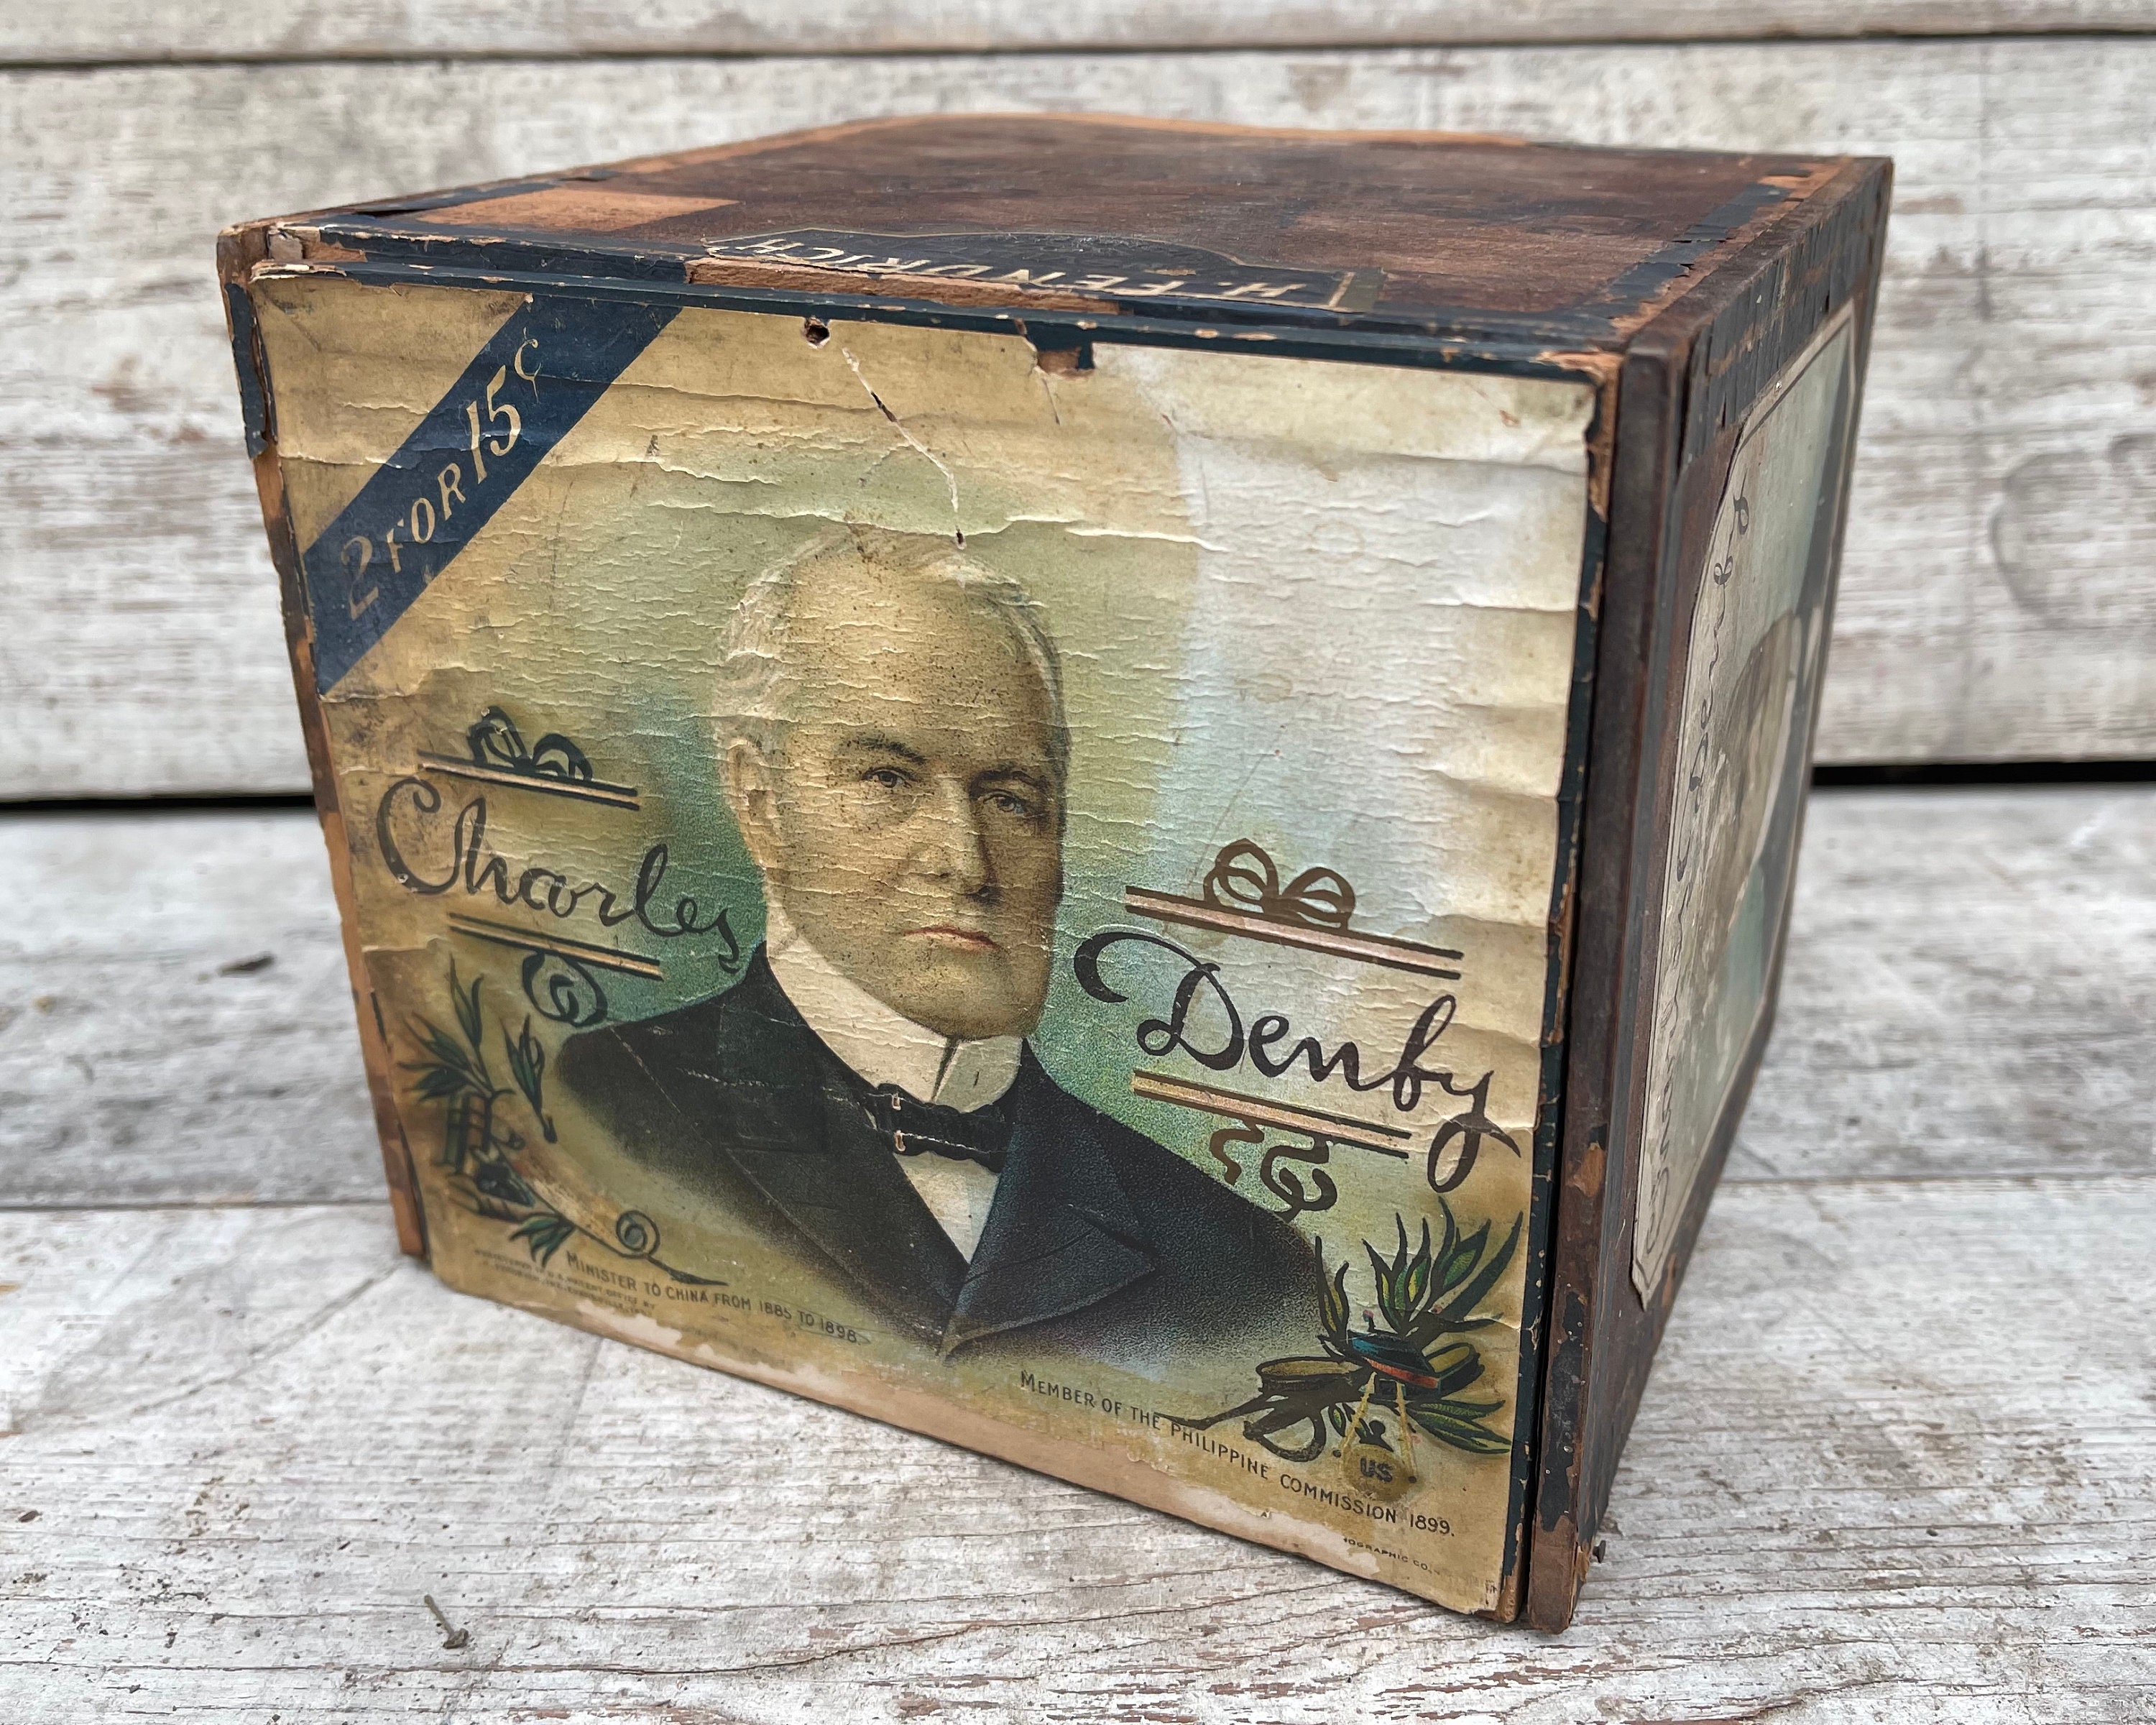 Vintage Jewelry Wooden Crates Drawer Tea Storage Box Organizer Kitchen  Organizer Box Cigar Boxes Empty Wooden